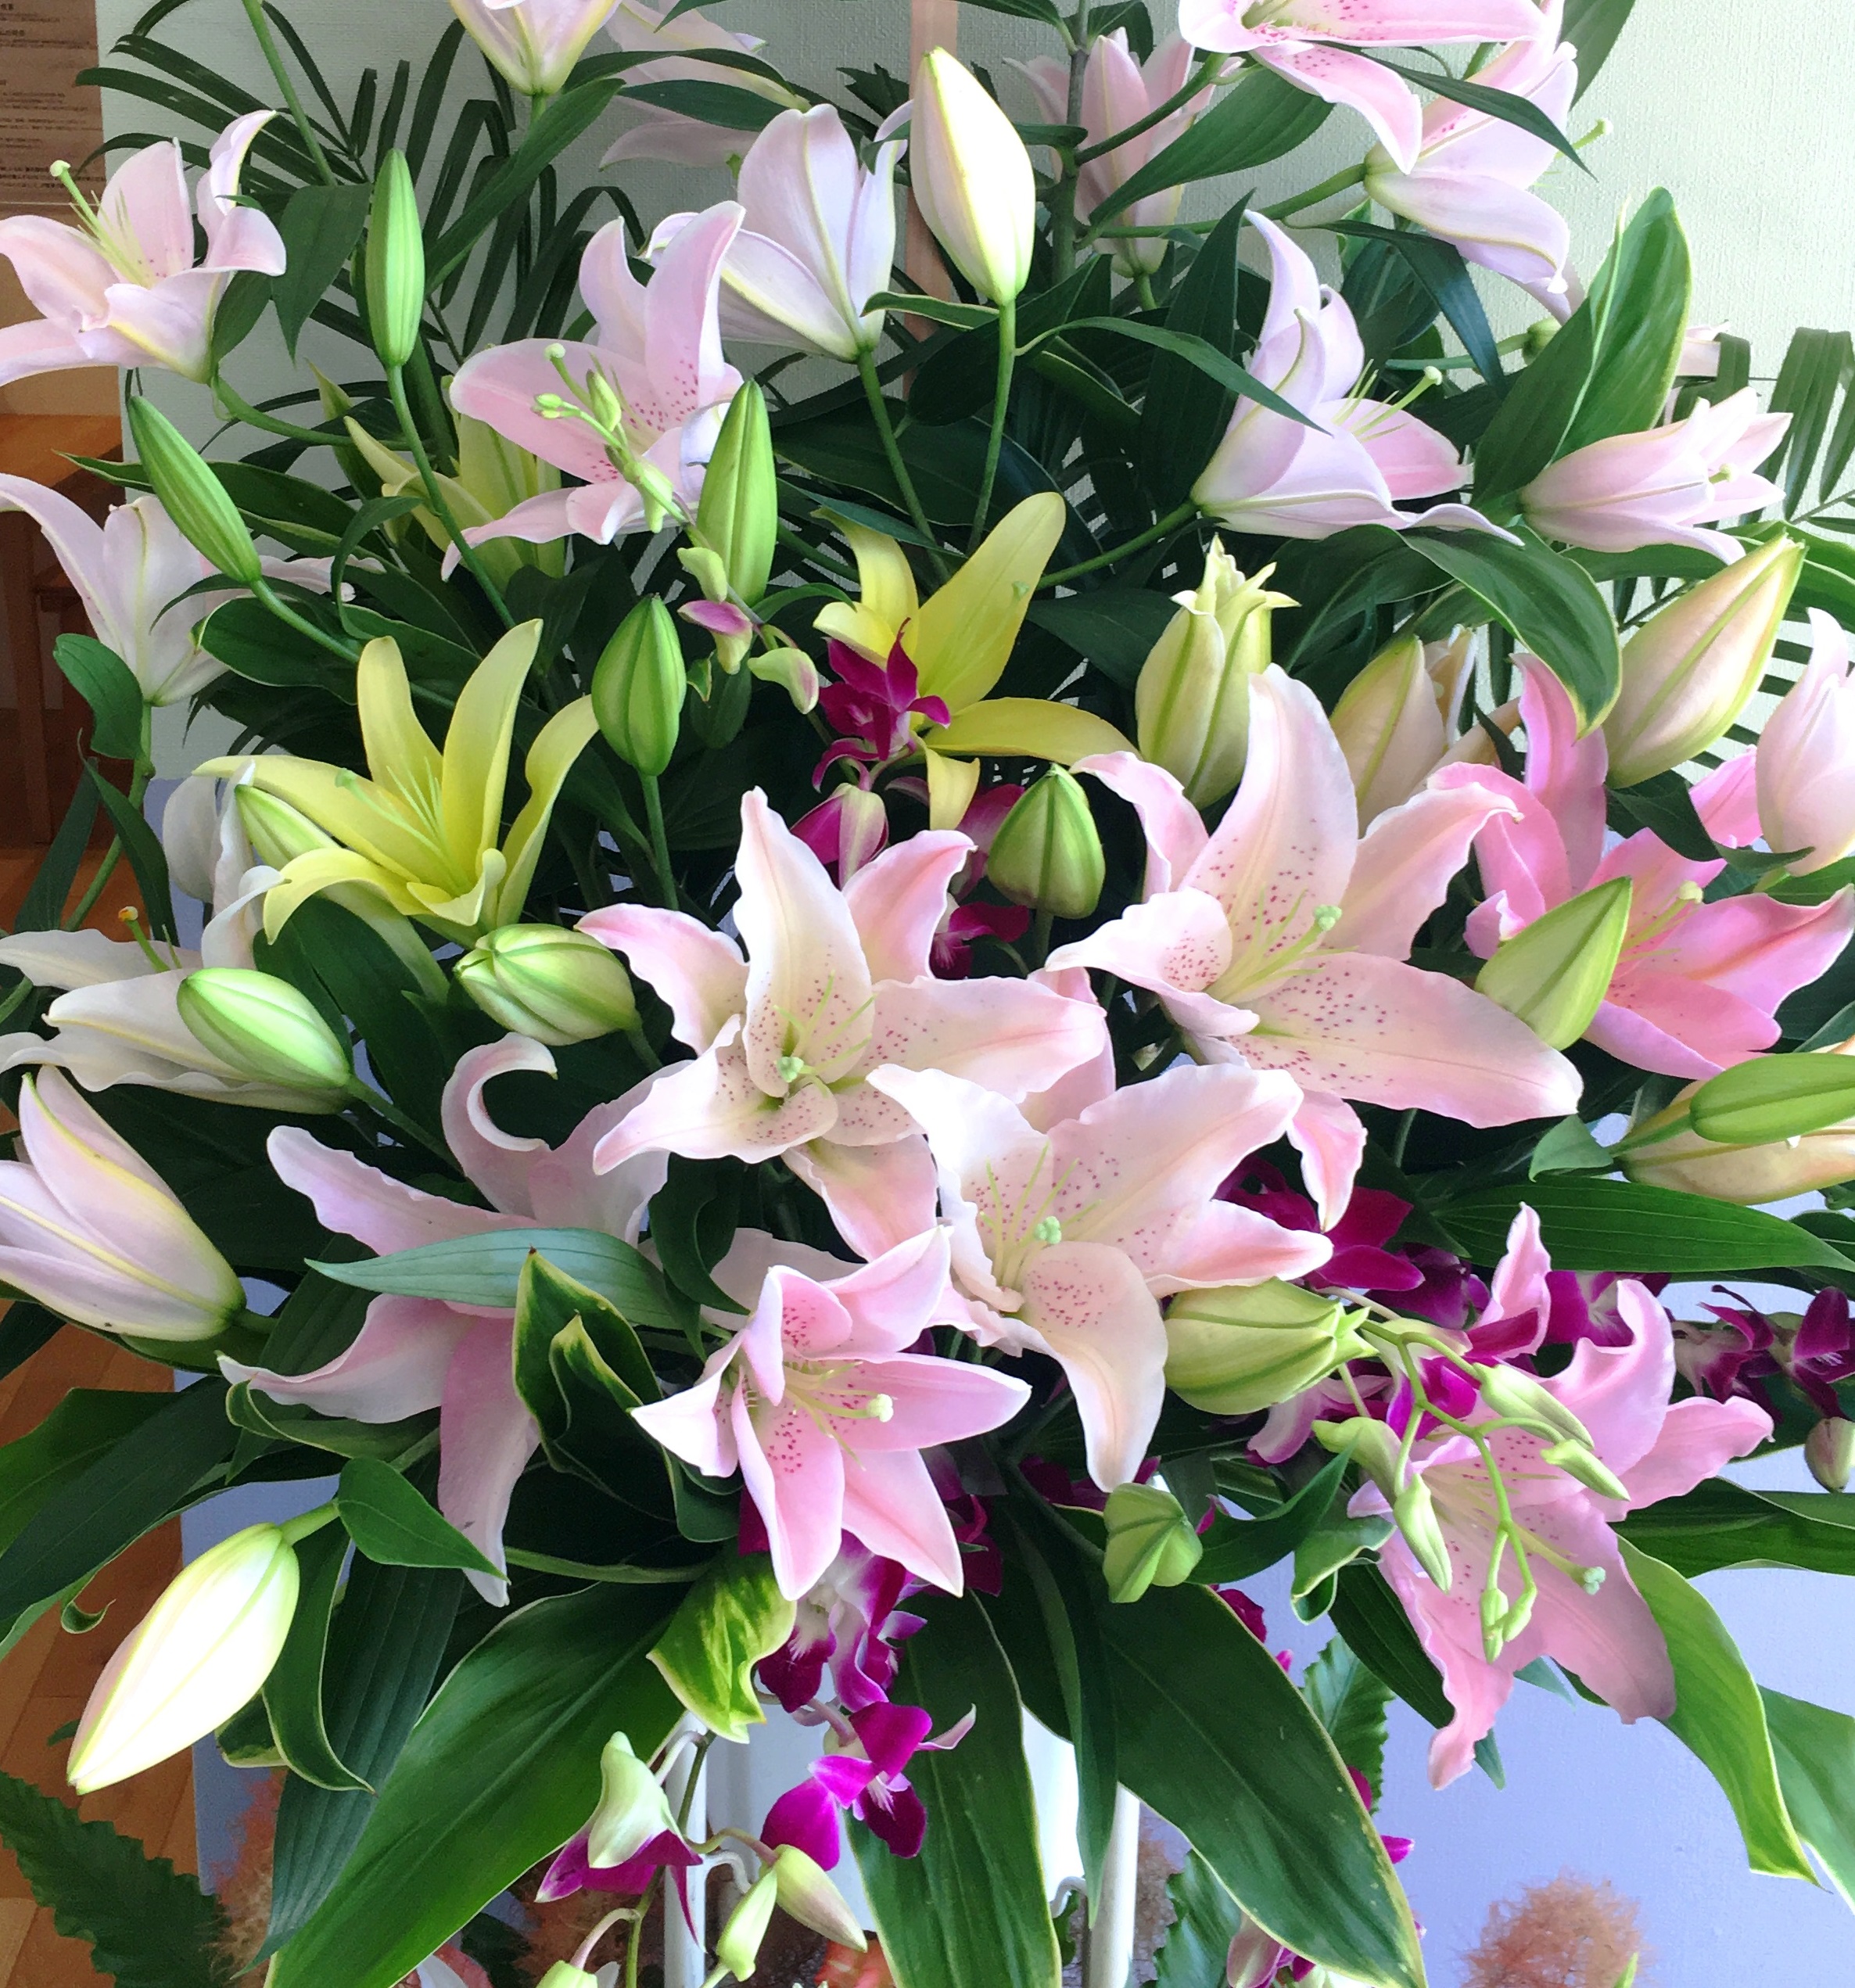 【ナオ花屋の納品事例127】横浜市関内の法人企業様よりスタンド花を配達しました！